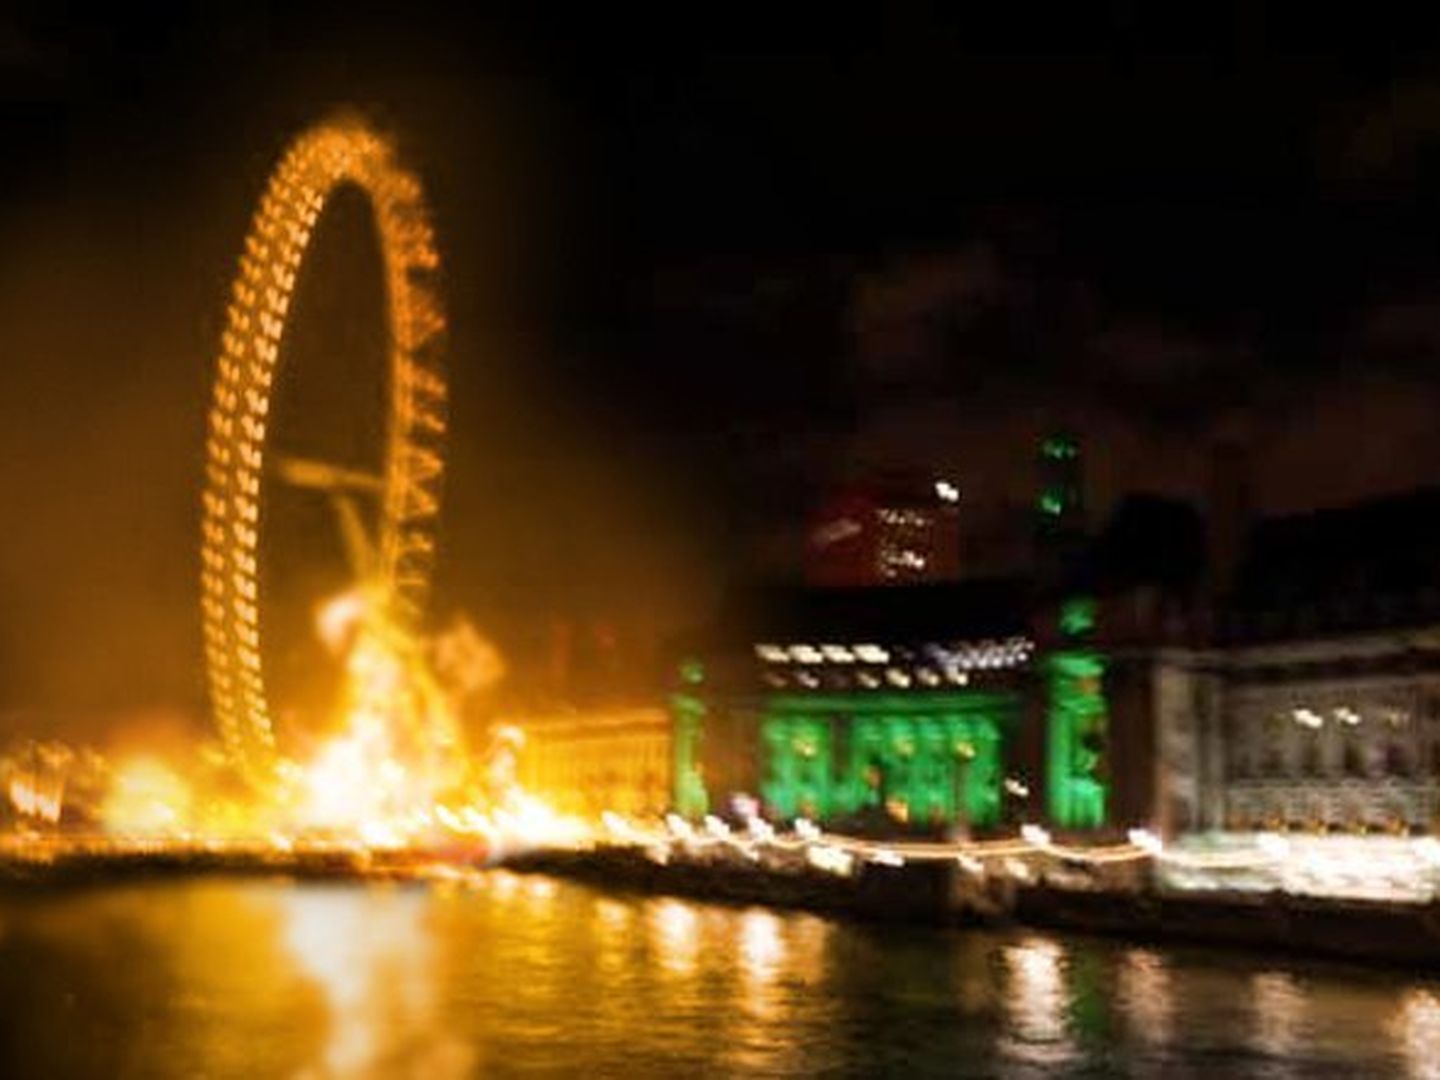 La foto del London Eye en llamas era una falsificación